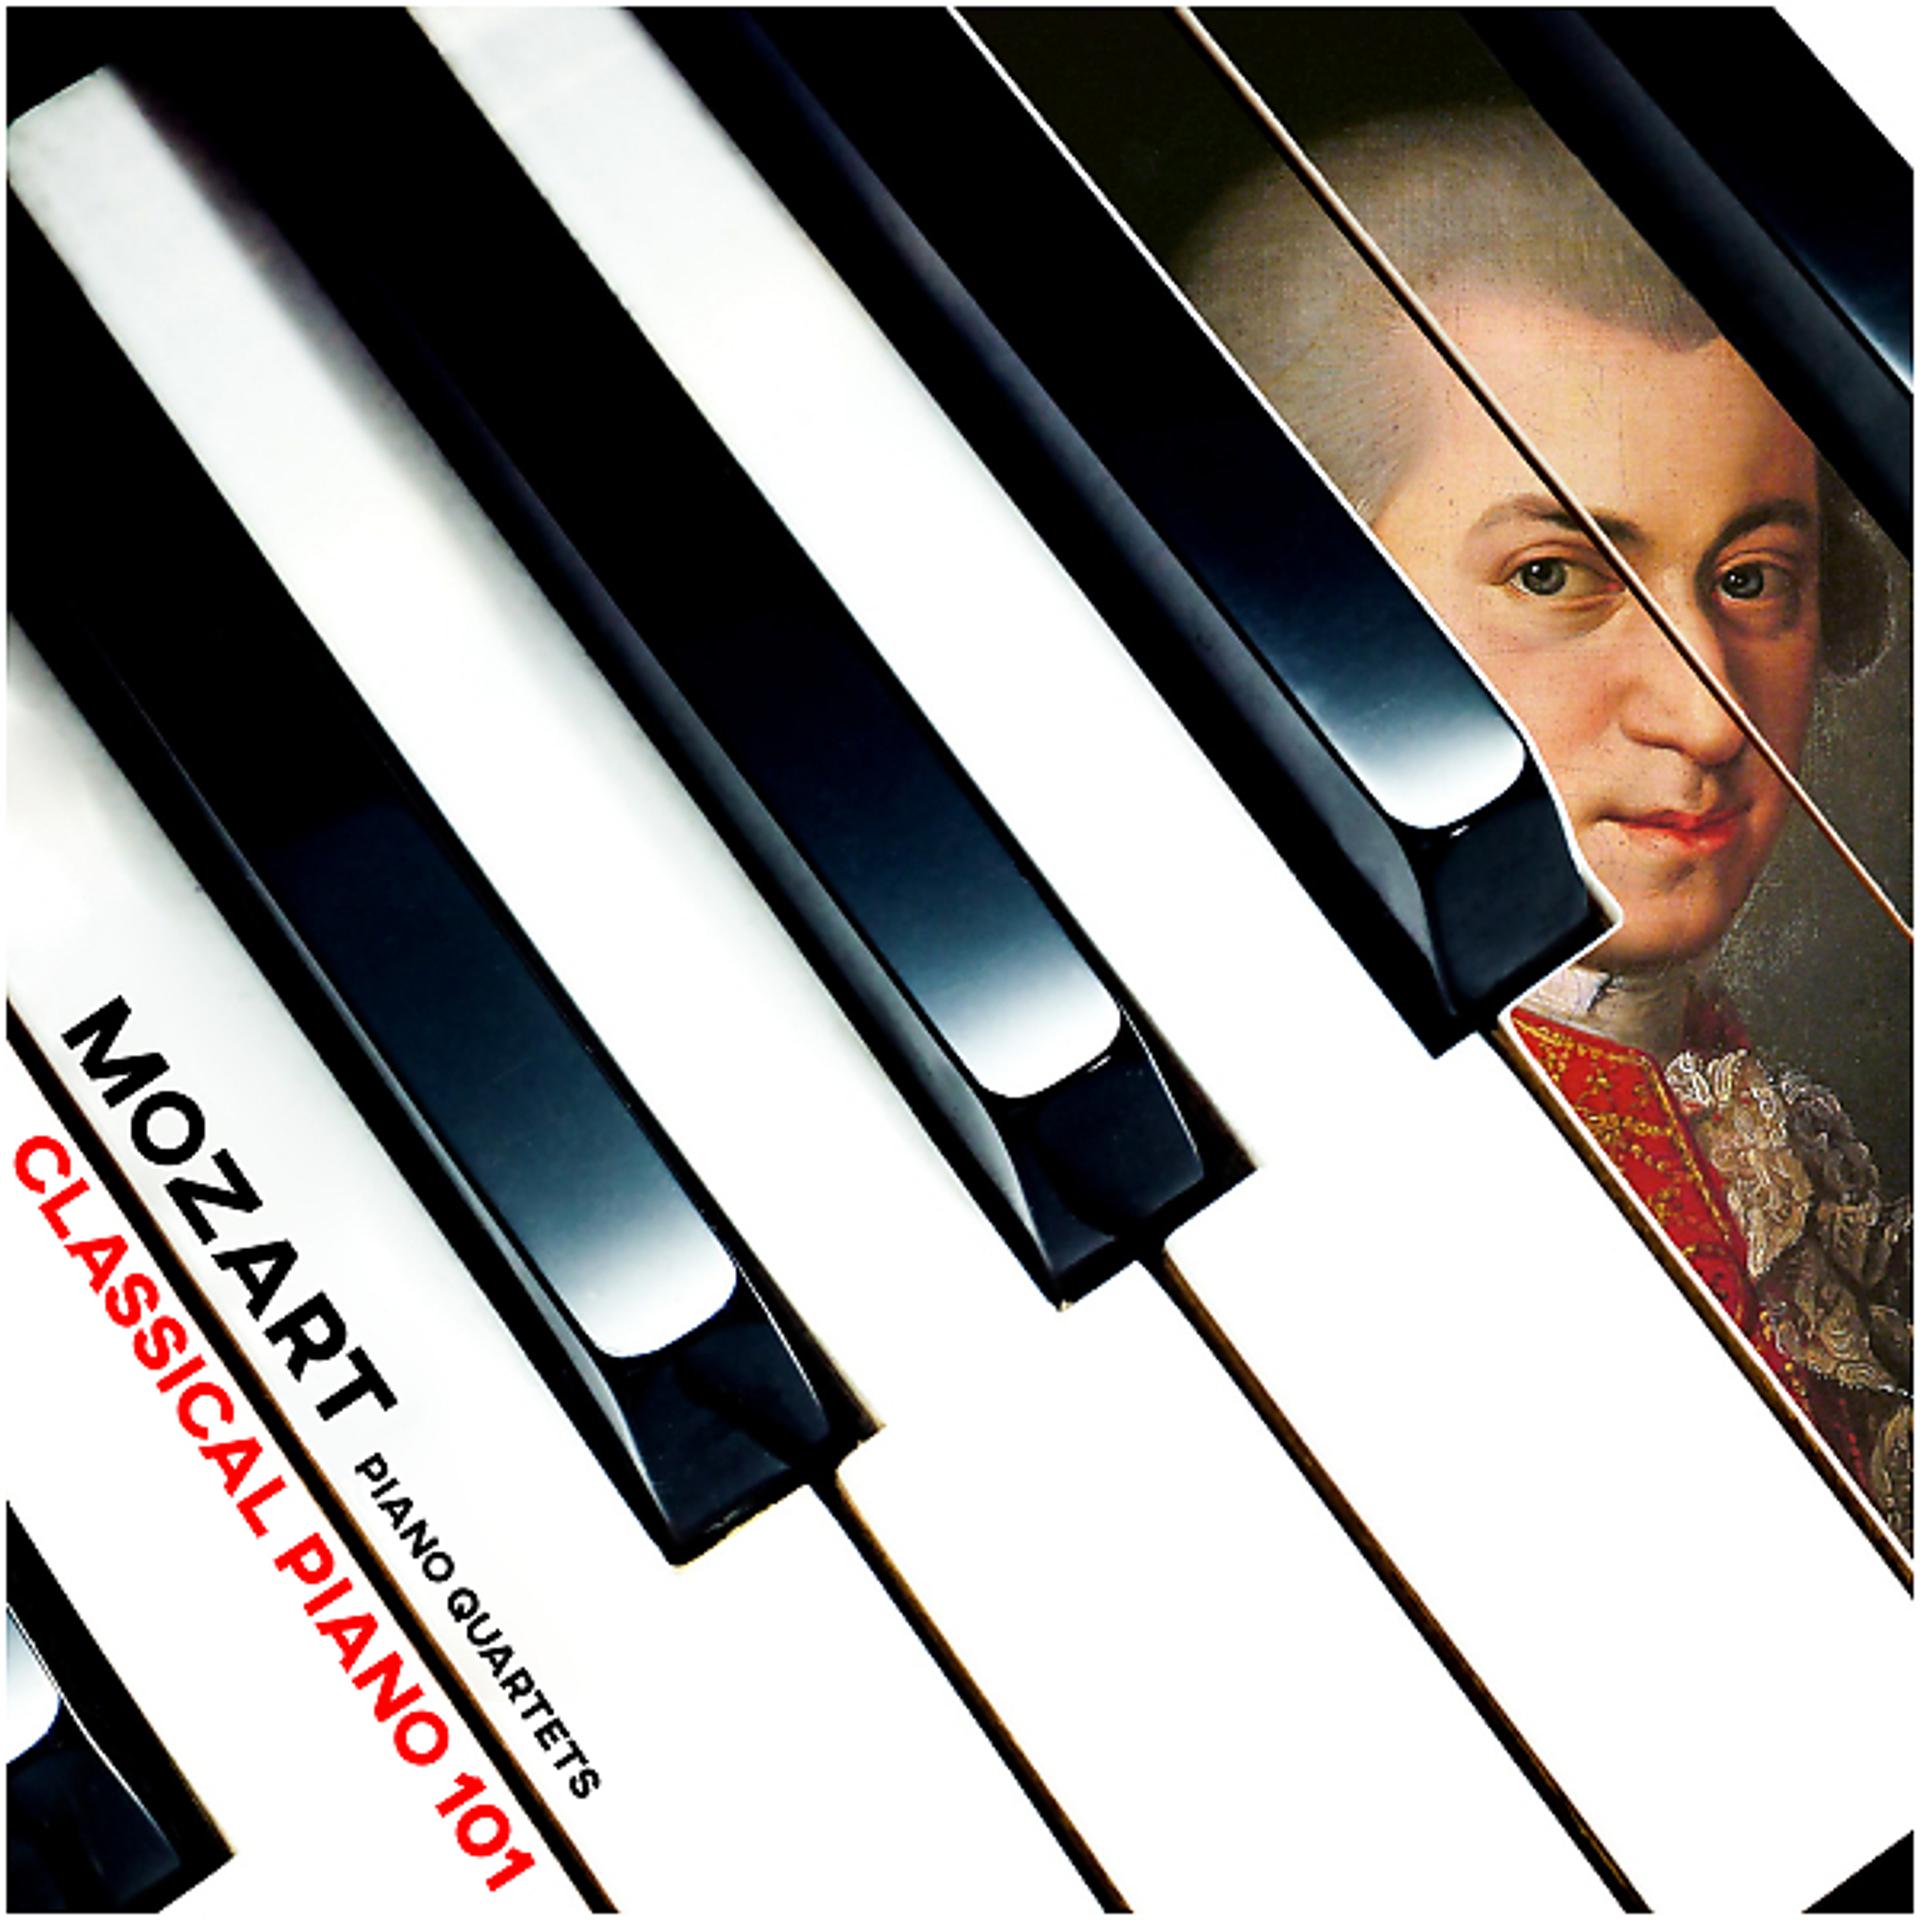 Постер альбома Mozart: Piano Quartets